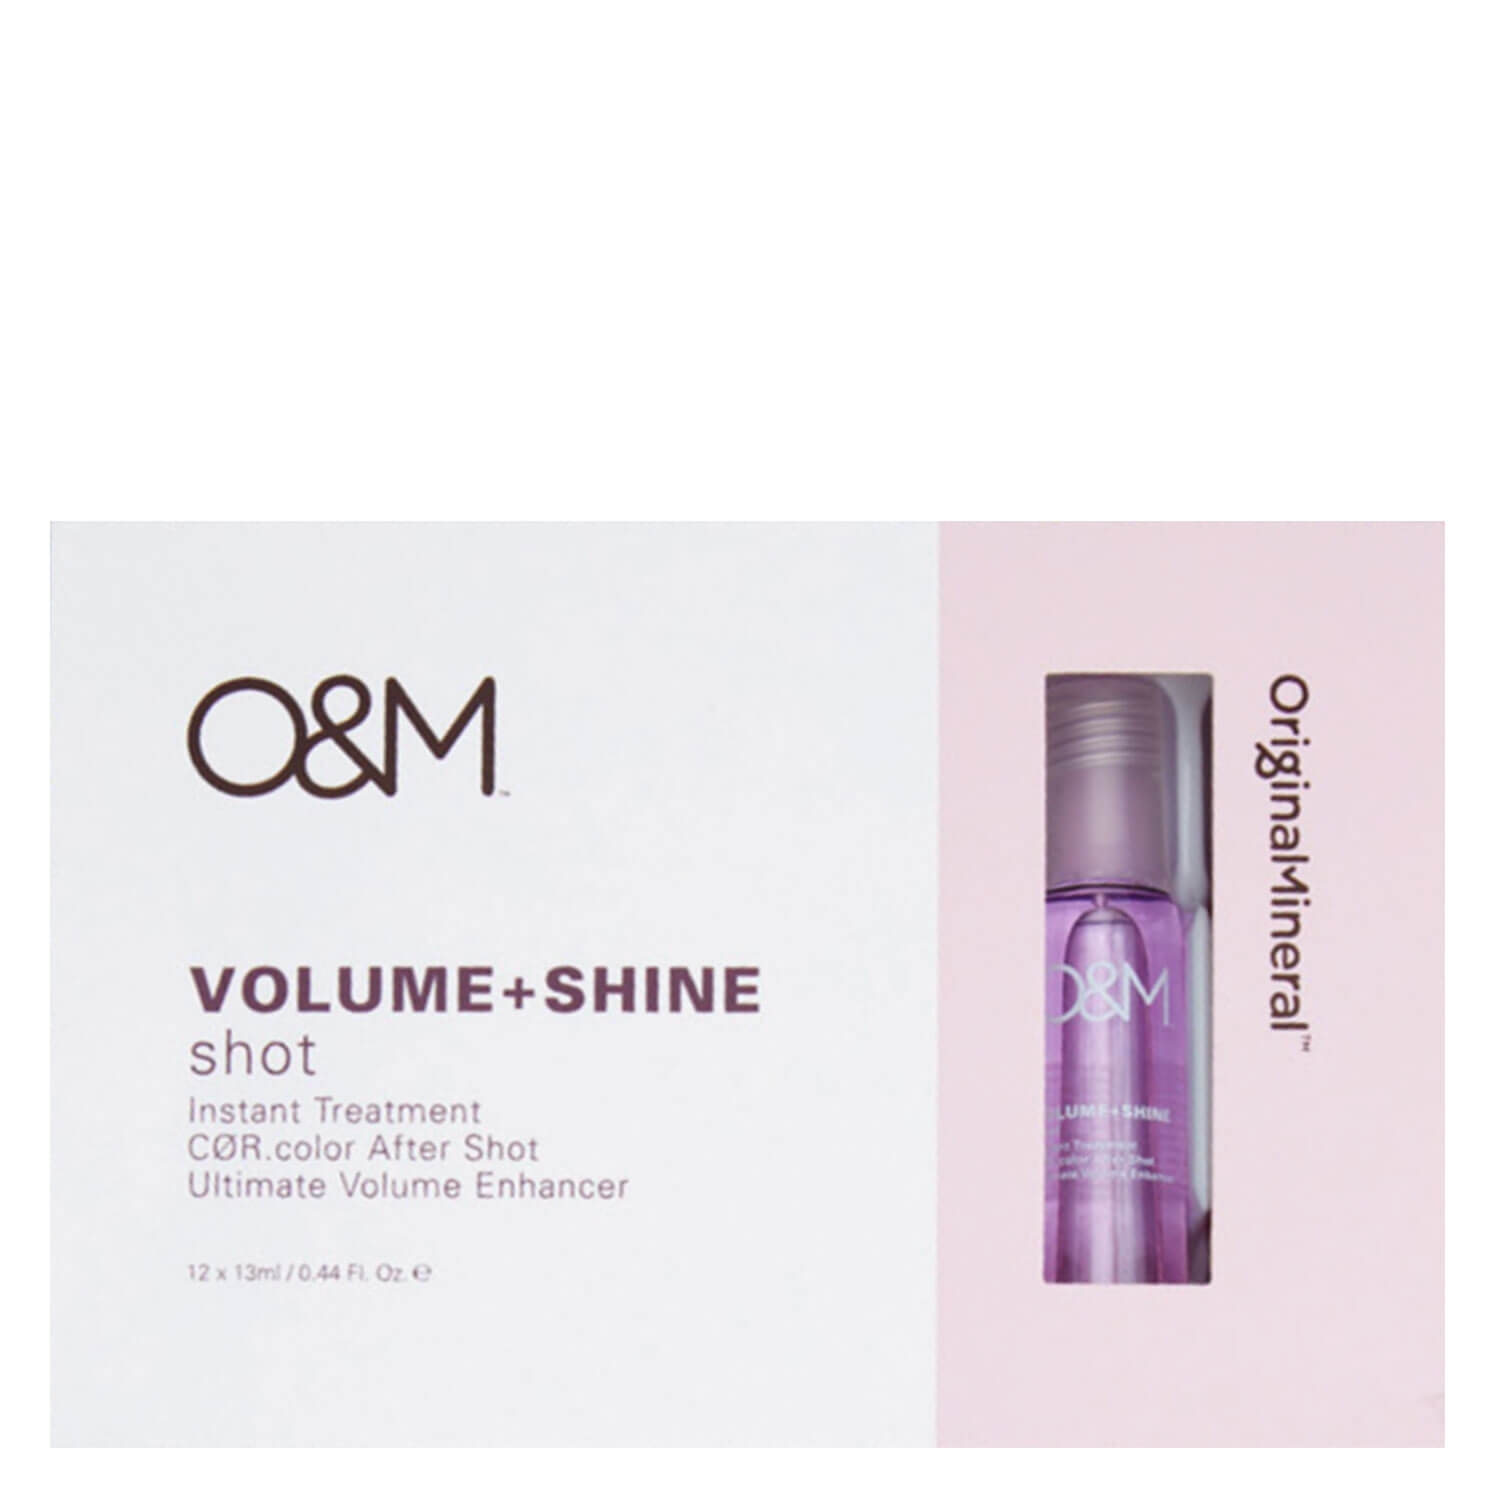 Produktbild von O&M Haircare - Volume + Shine Shot